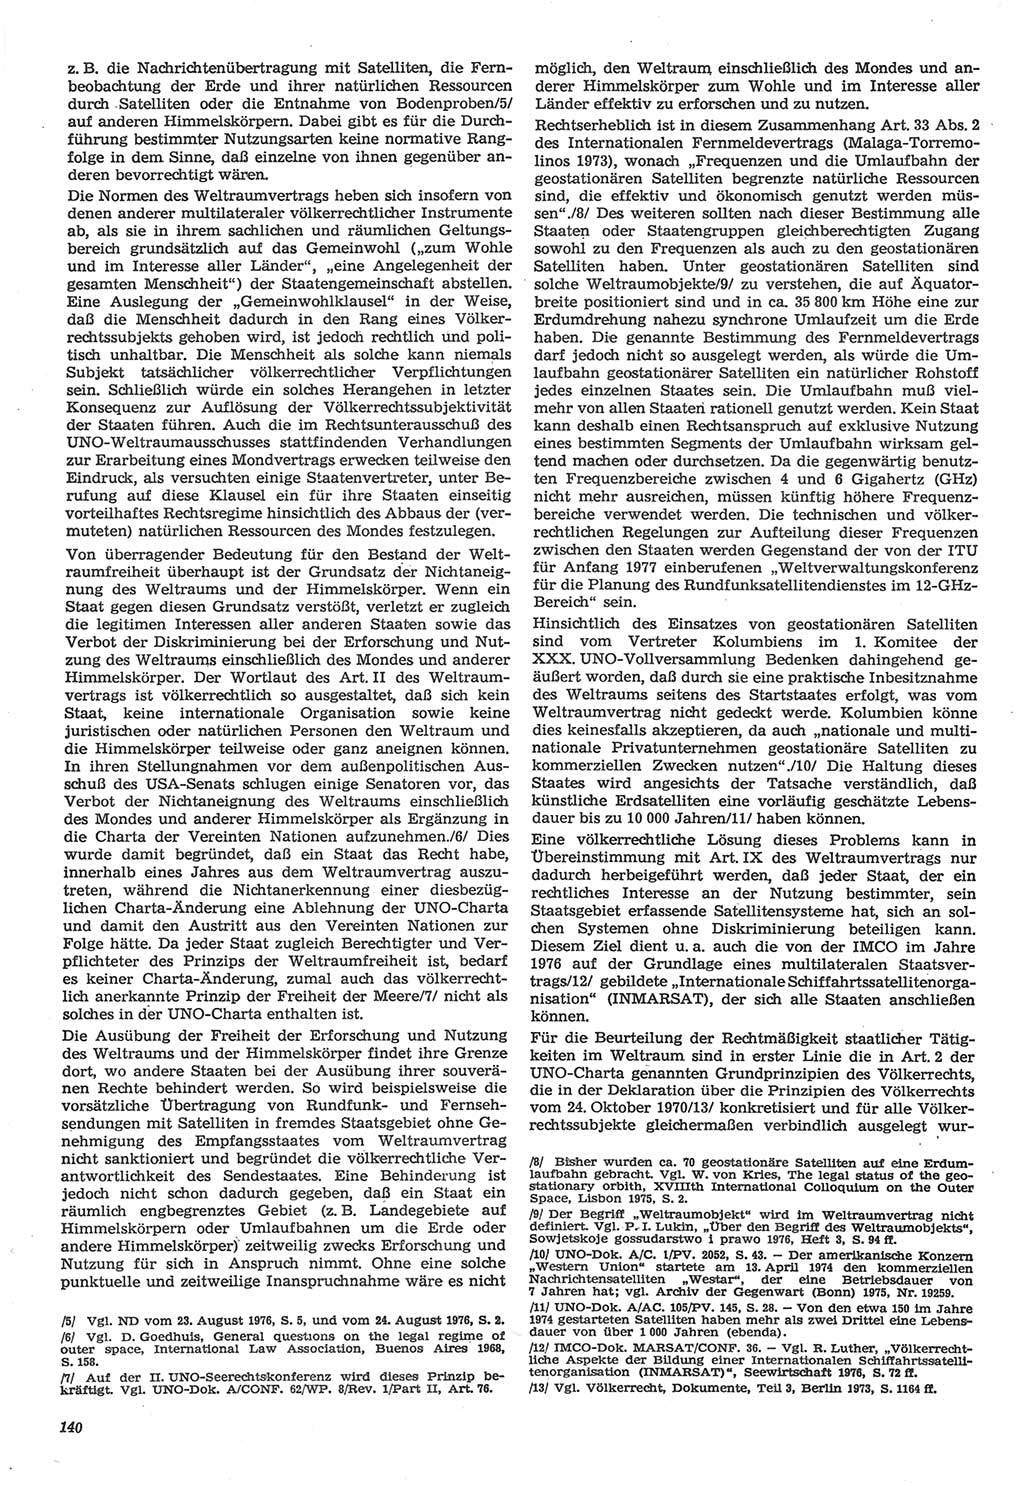 Neue Justiz (NJ), Zeitschrift für Recht und Rechtswissenschaft-Zeitschrift, sozialistisches Recht und Gesetzlichkeit, 31. Jahrgang 1977, Seite 140 (NJ DDR 1977, S. 140)